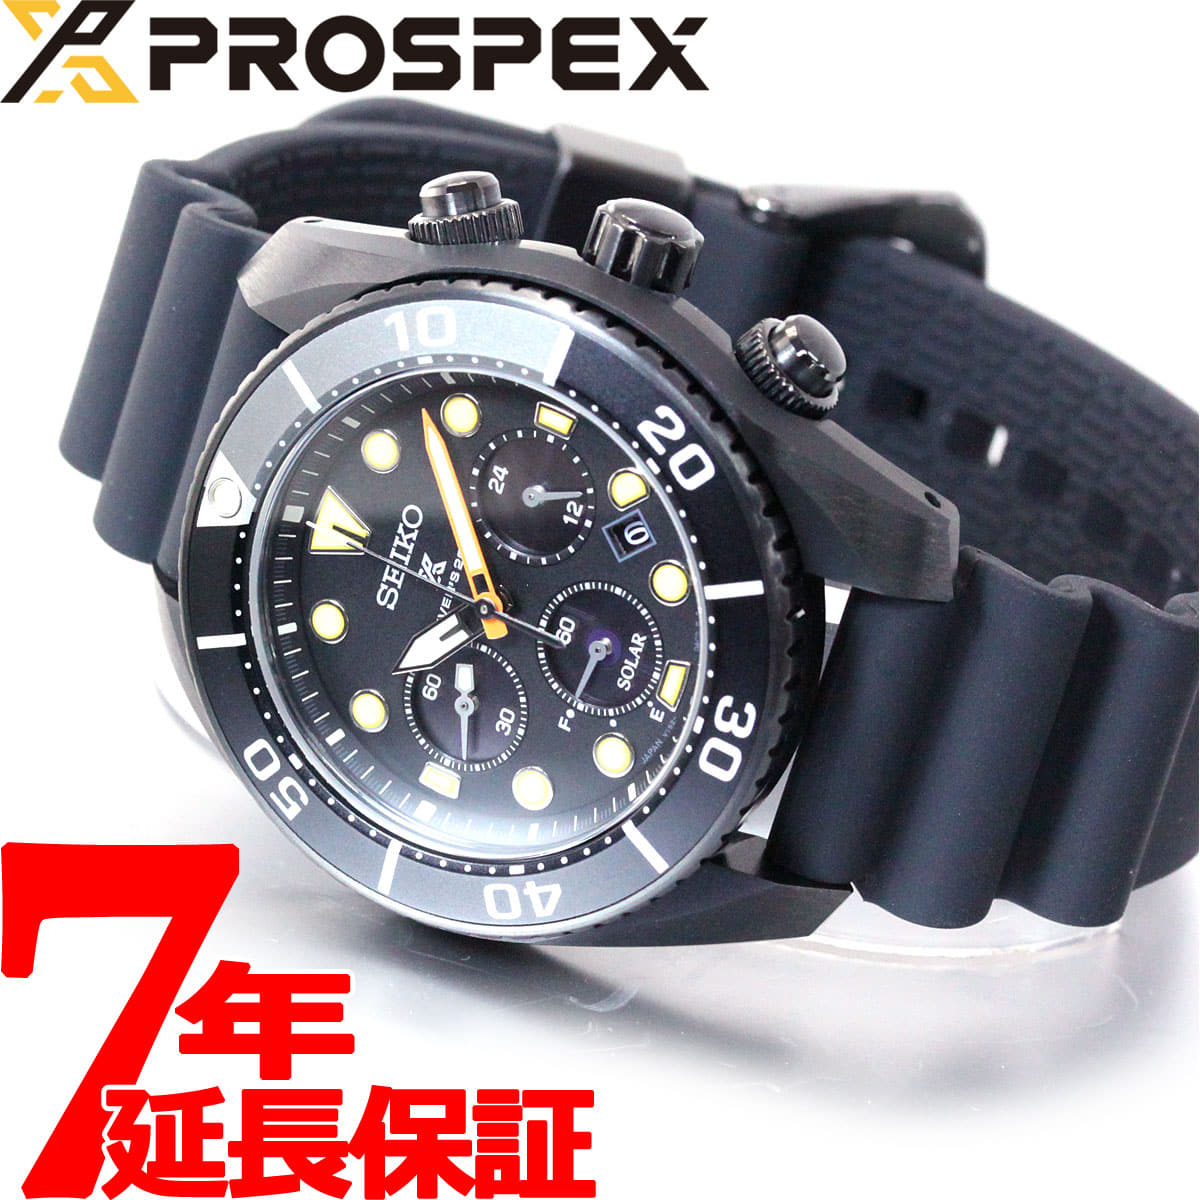 New] Men's Watch SUMO SBDL065 SEIKO Pross pecks sumo diver scuba SEIKO  PROSPEX solar core - BE FORWARD Store